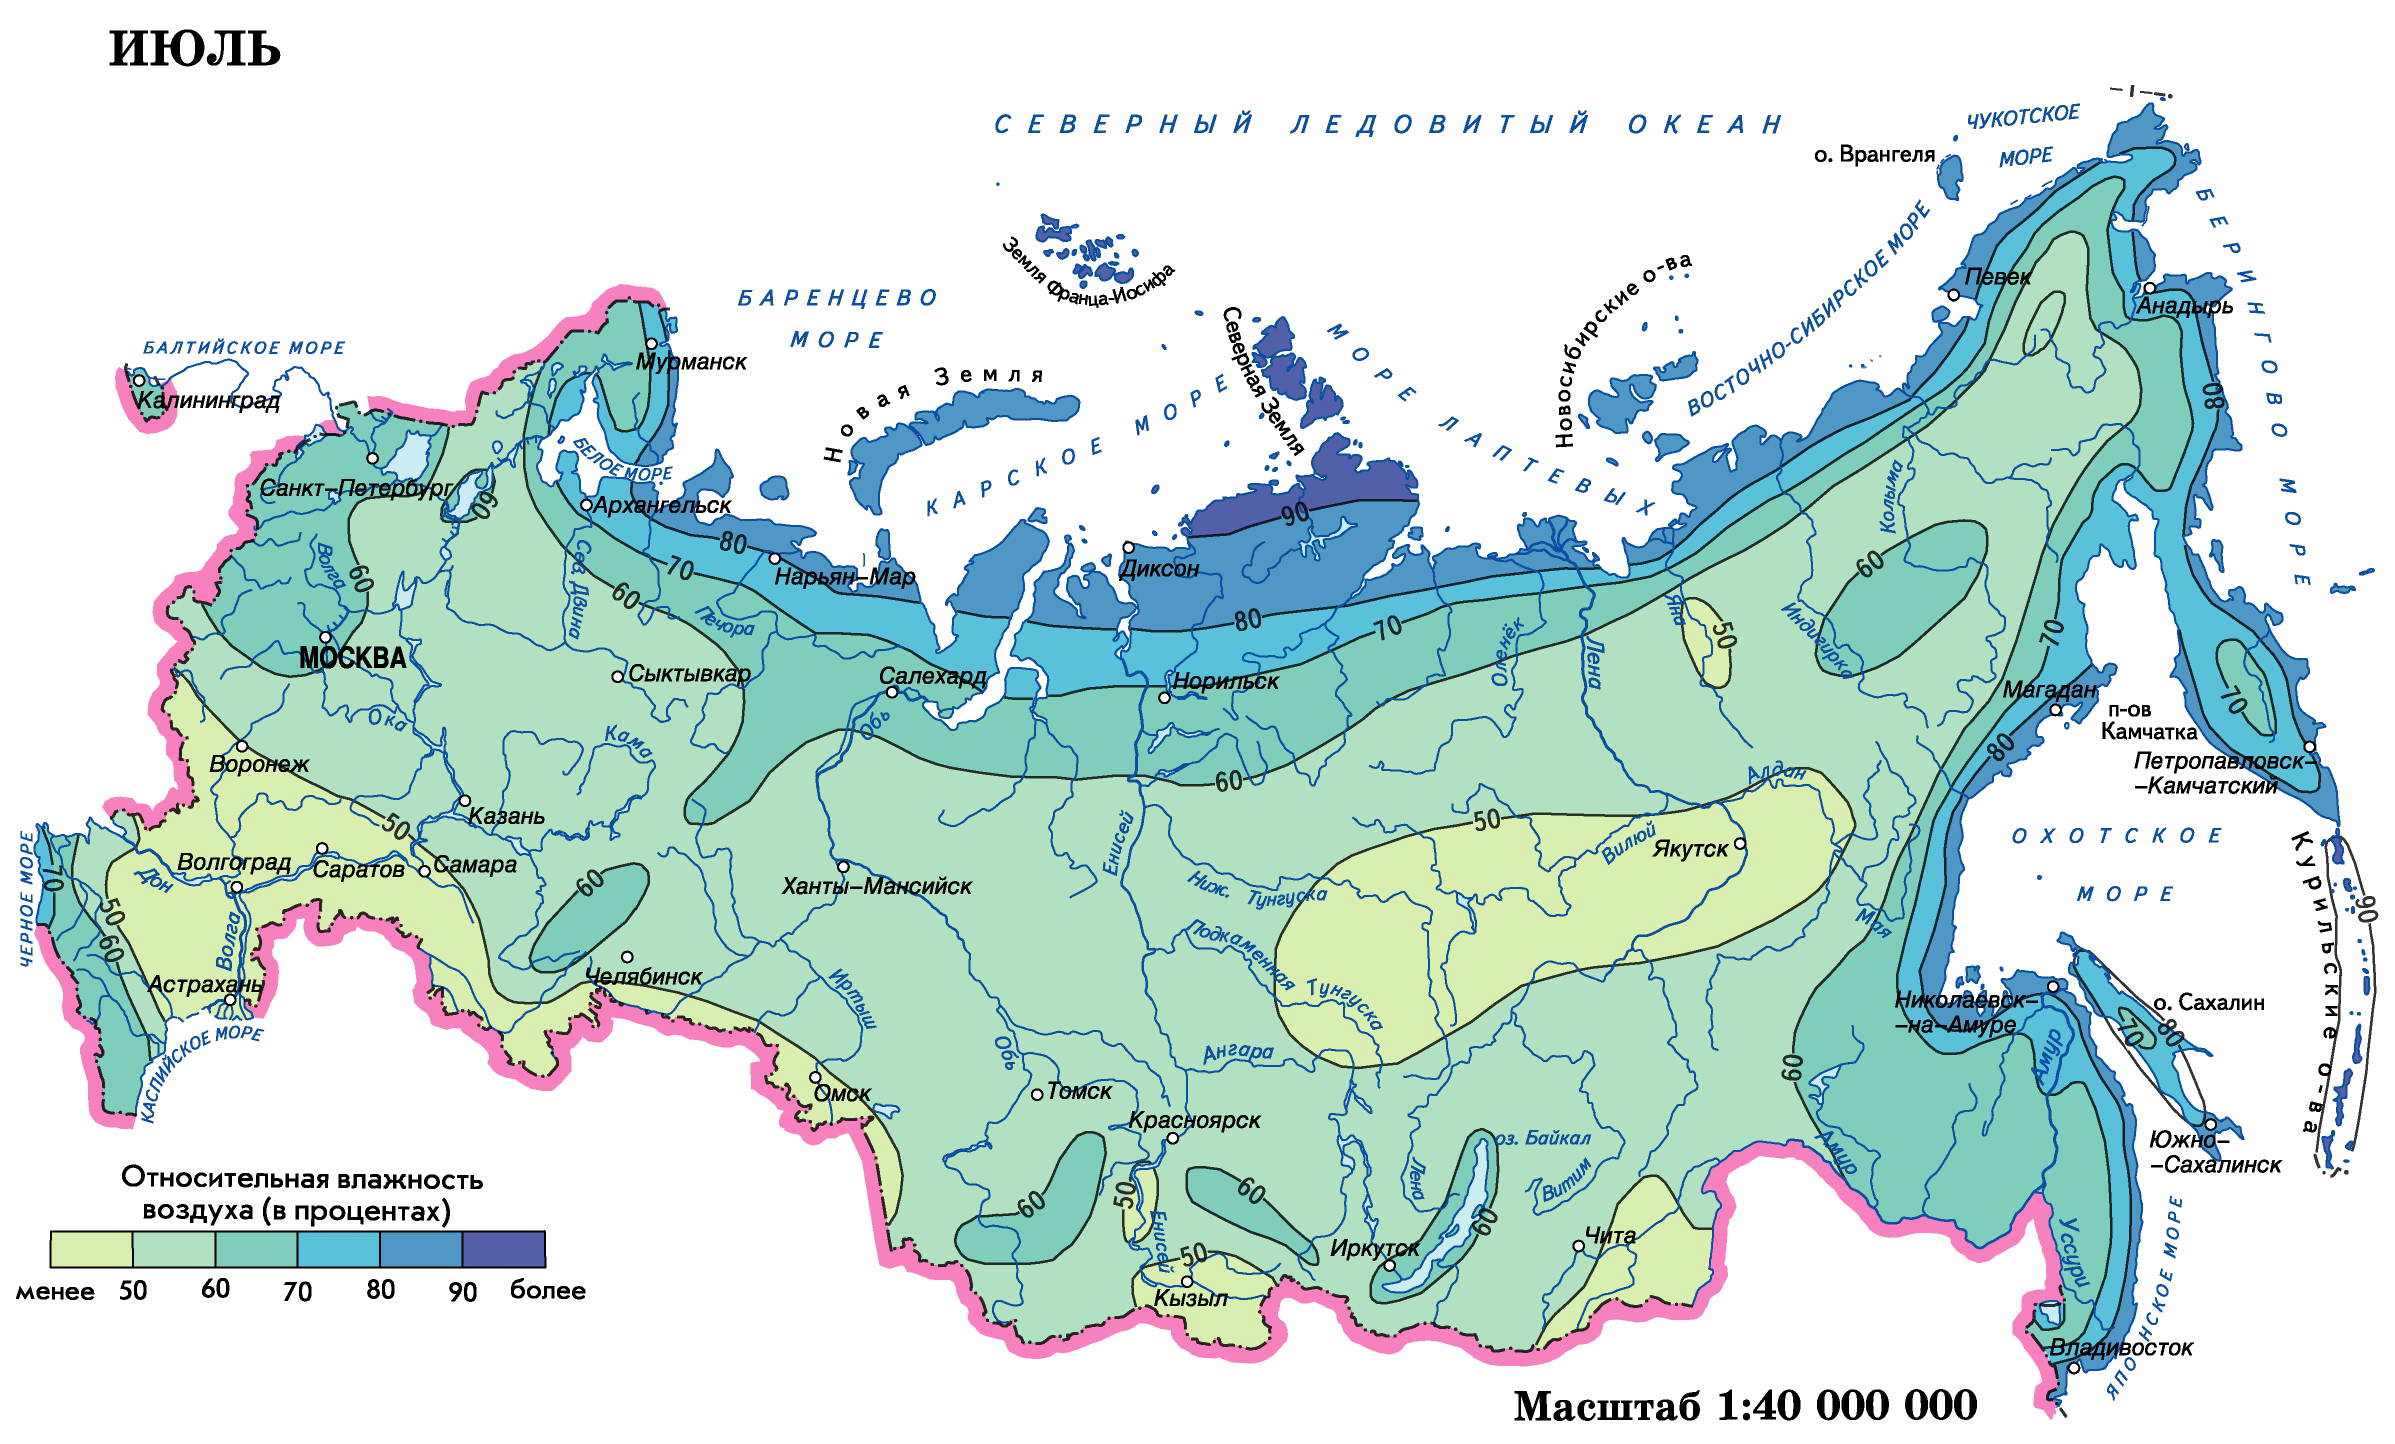 Средняя влажность воздуха в смоленске. Карта влажности воздуха России. Карта влажности климата России. Карта влажности воздуха России среднегодовая.